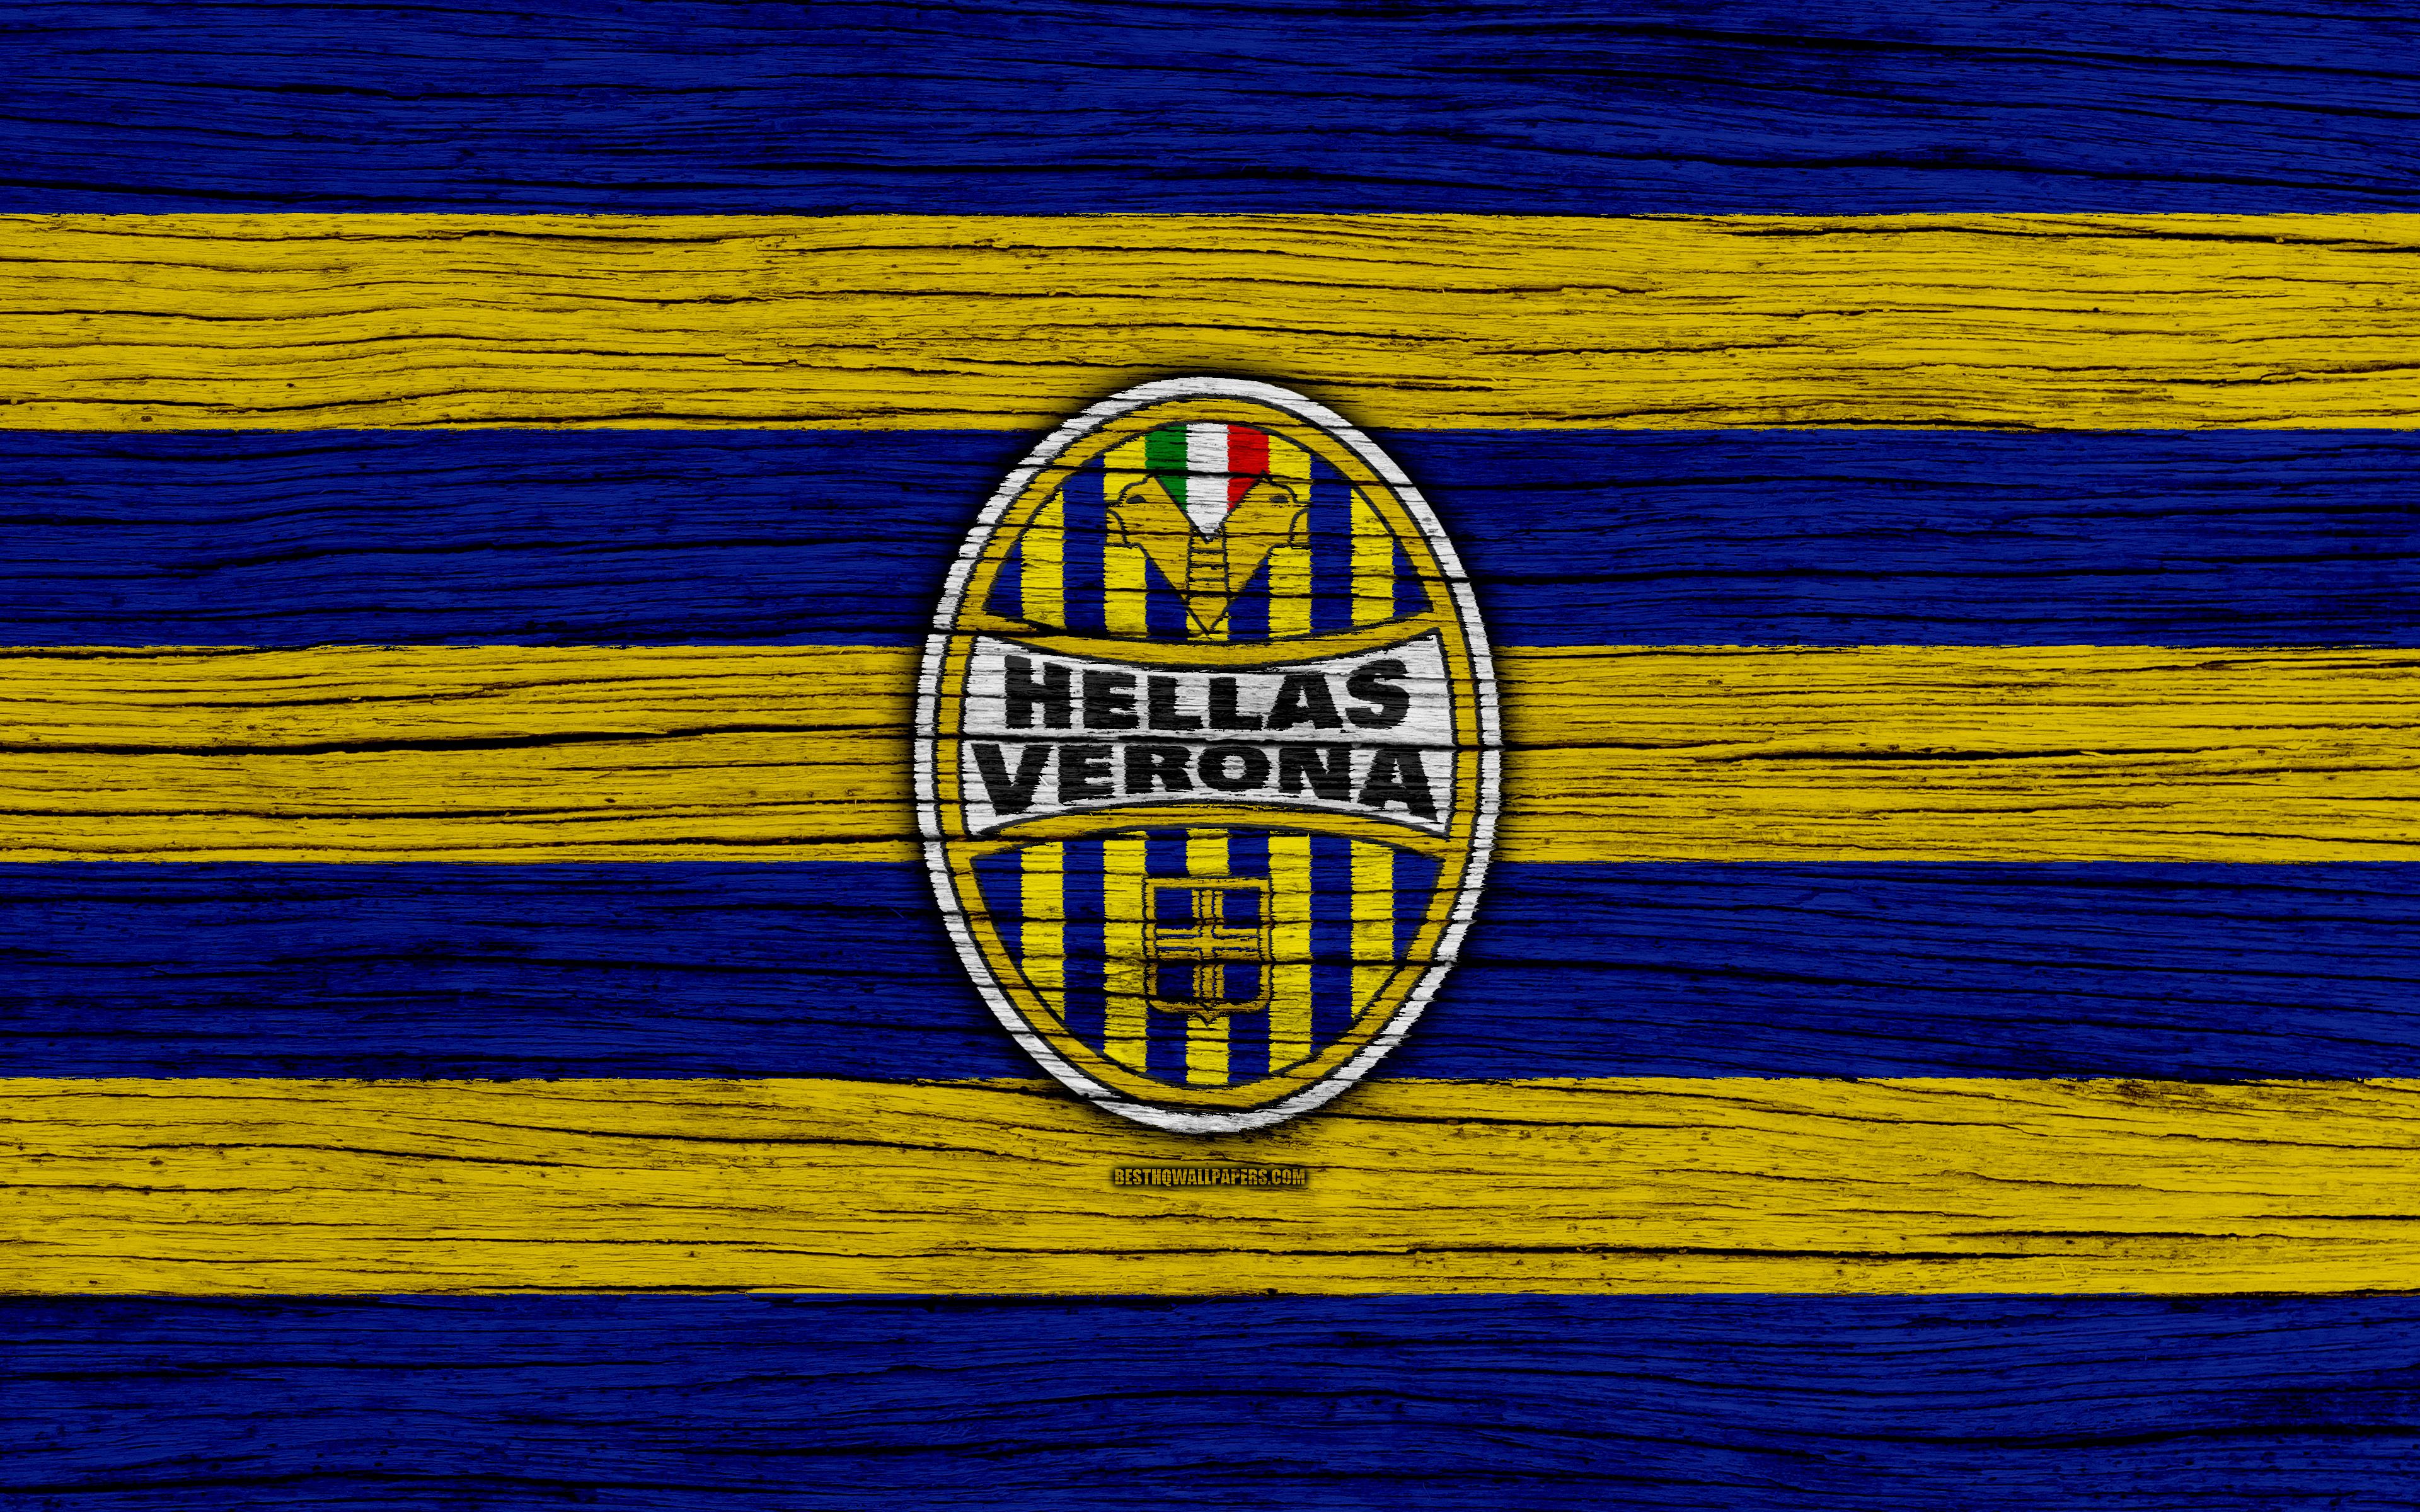 Download wallpaper Hellas Verona, 4k, Serie A, logo, Italy, wooden